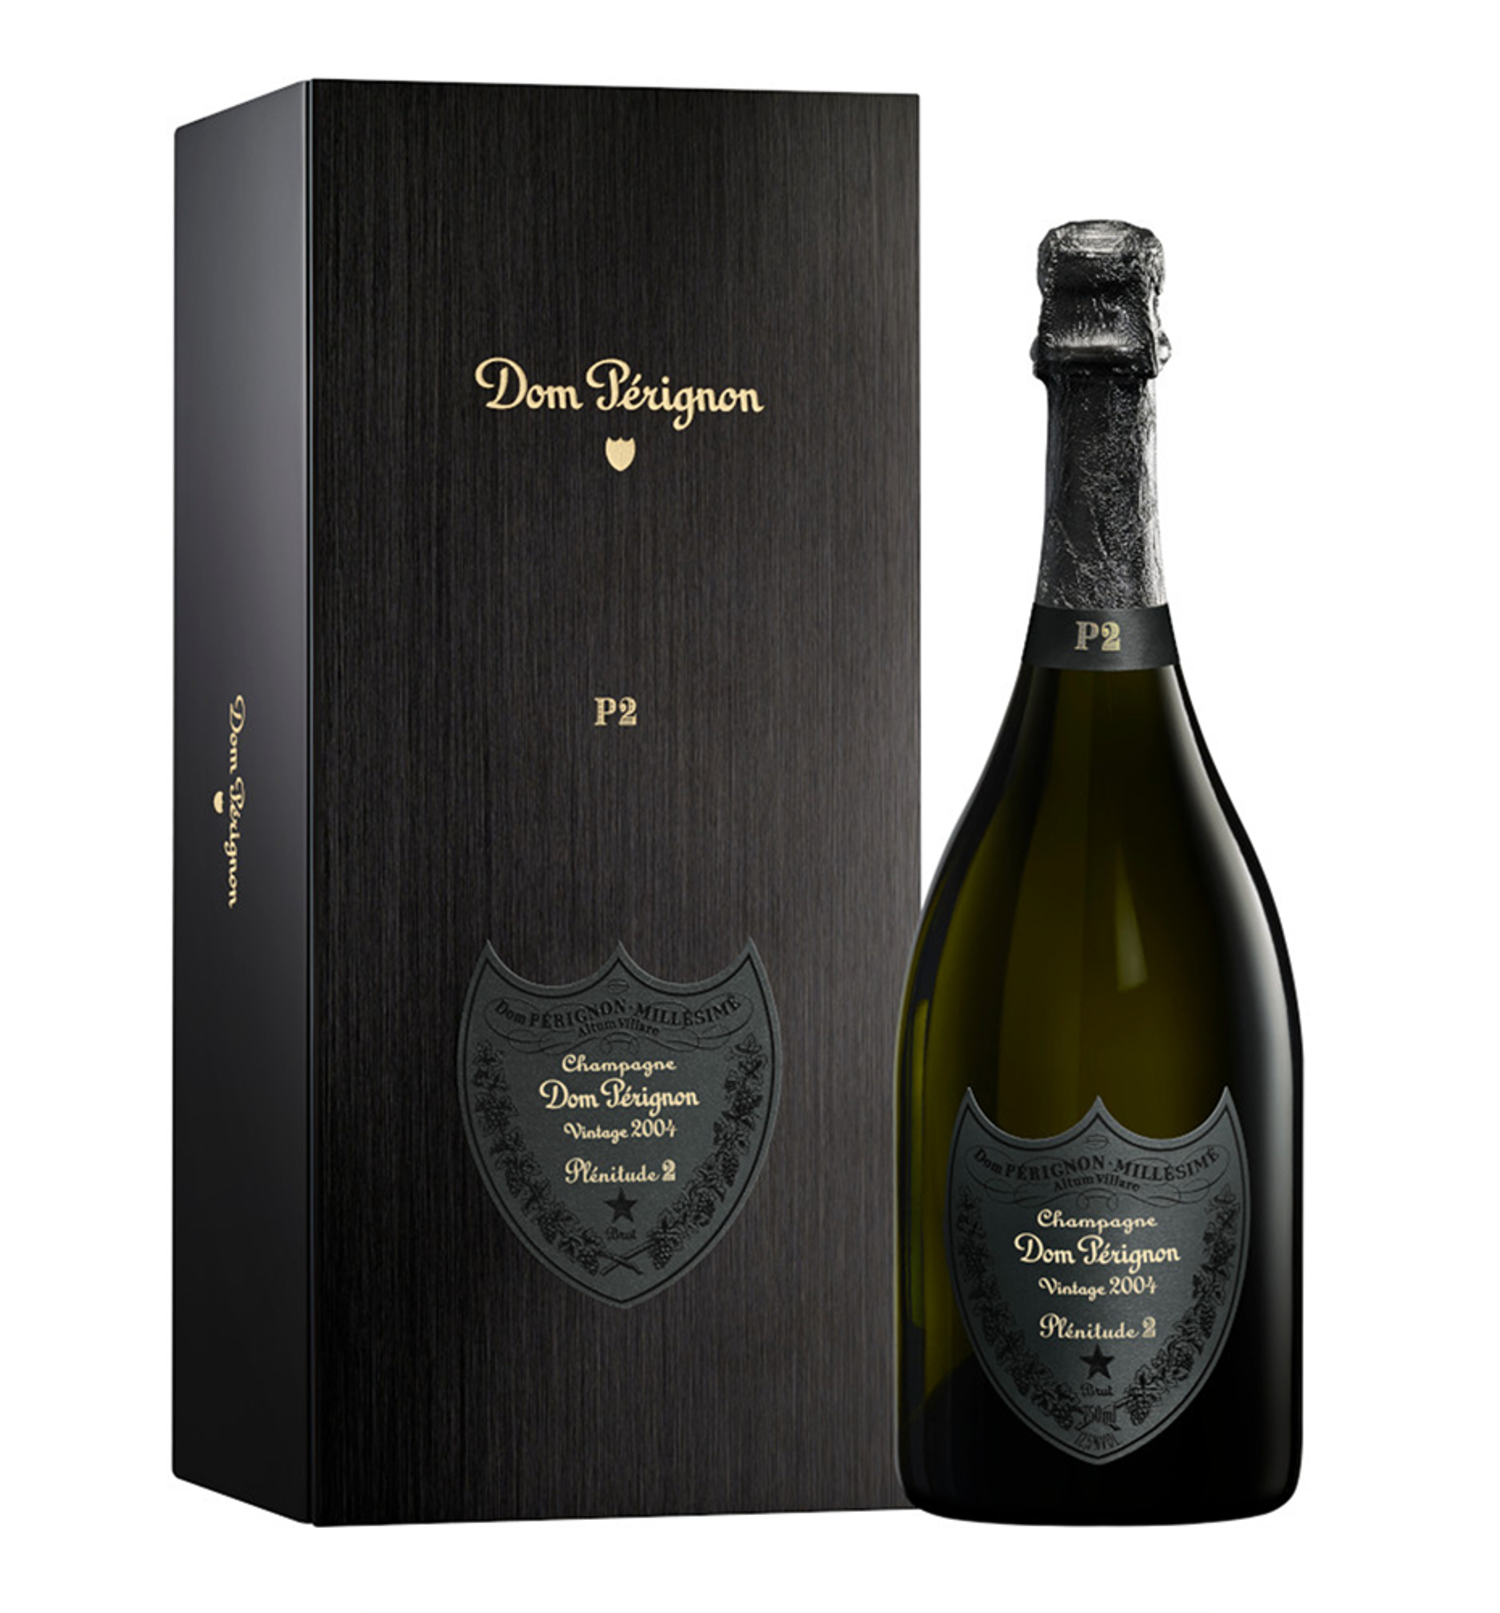 Dom Pérignon P2 Plénitude Brut Champagne 2004 750ml $535 - Uncle